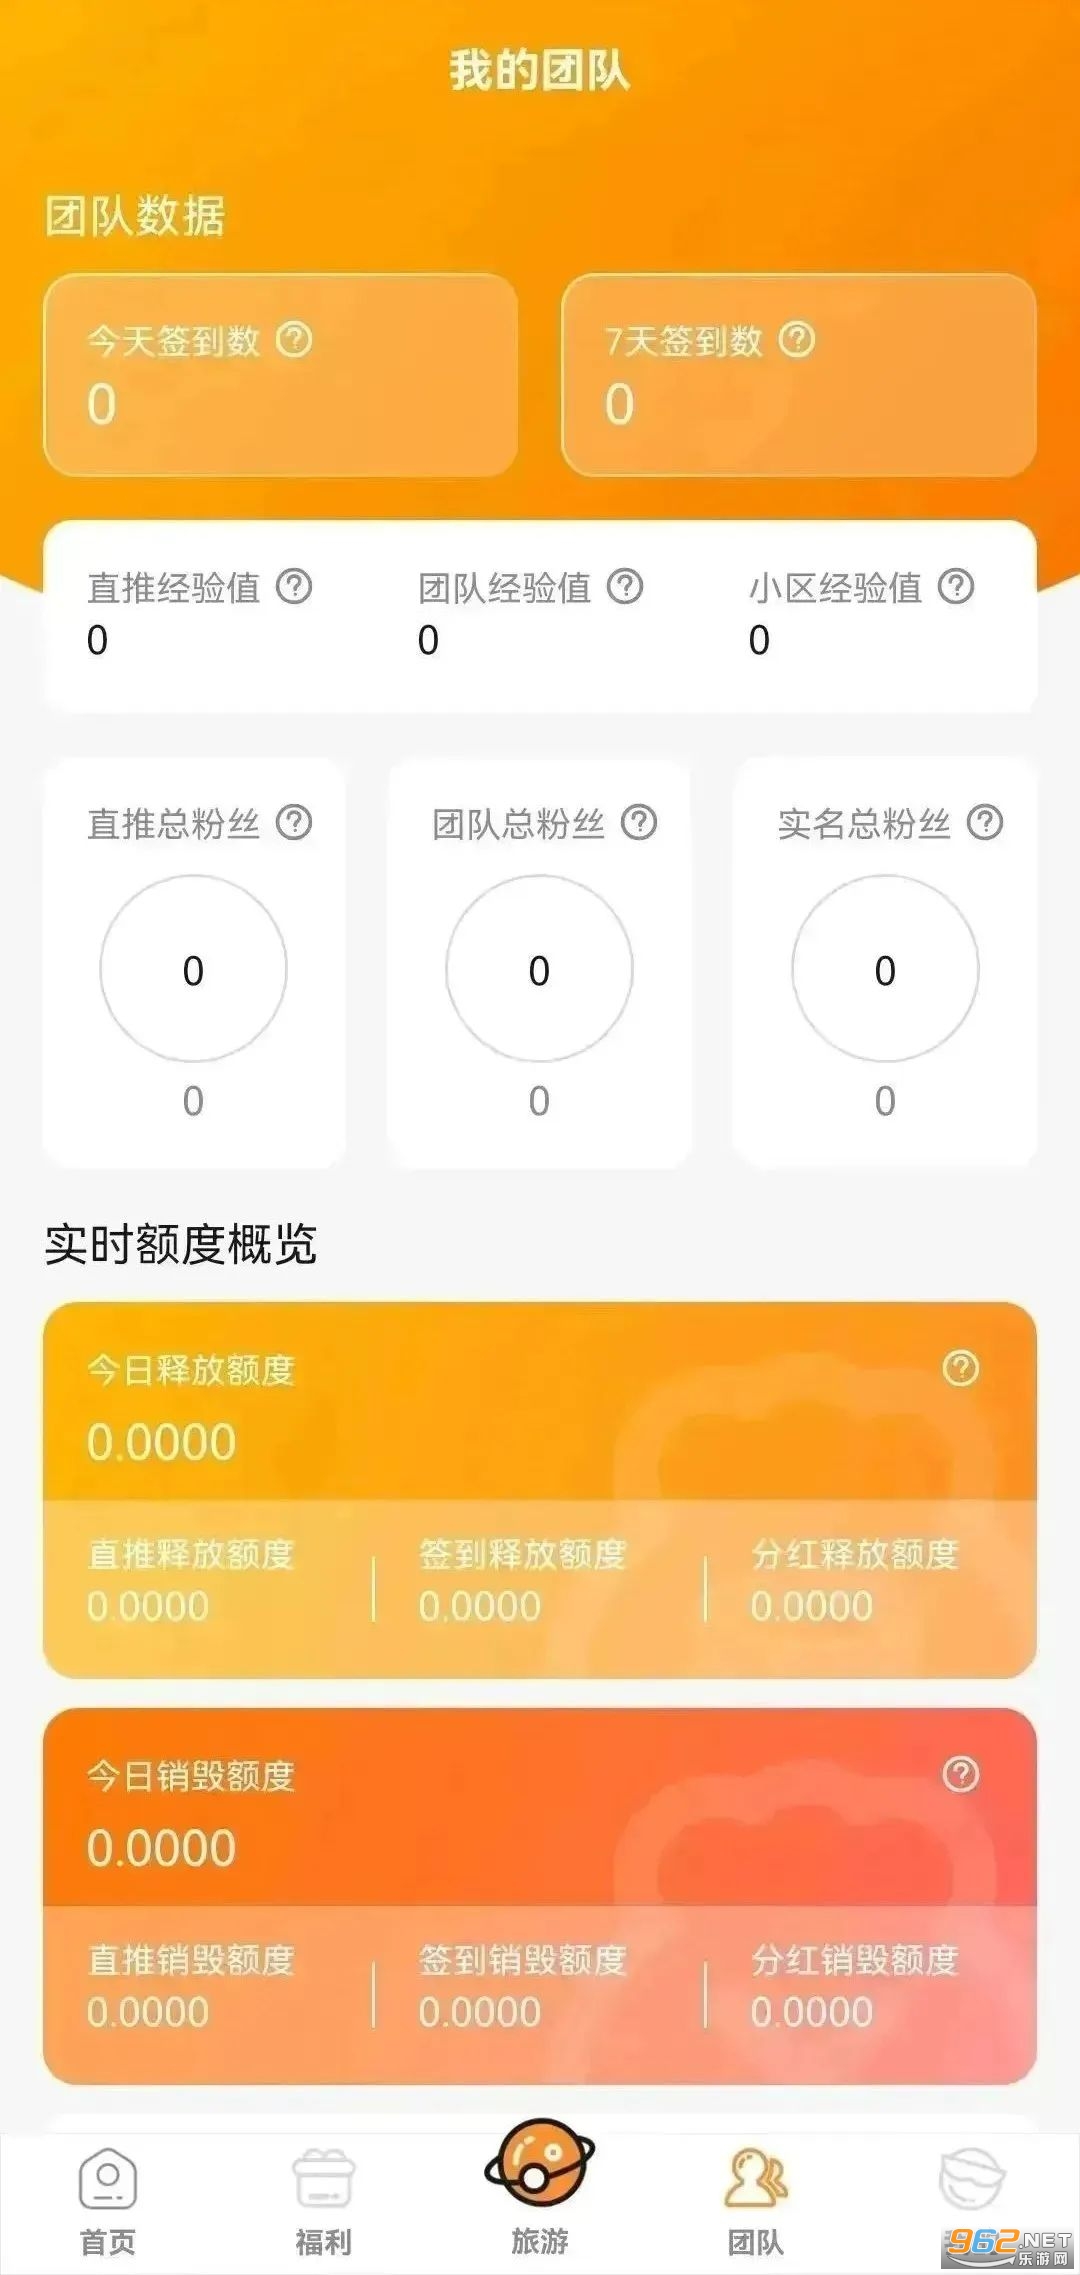 淘粉生活友邻伴旅app最新版本 2023 v1.00.08